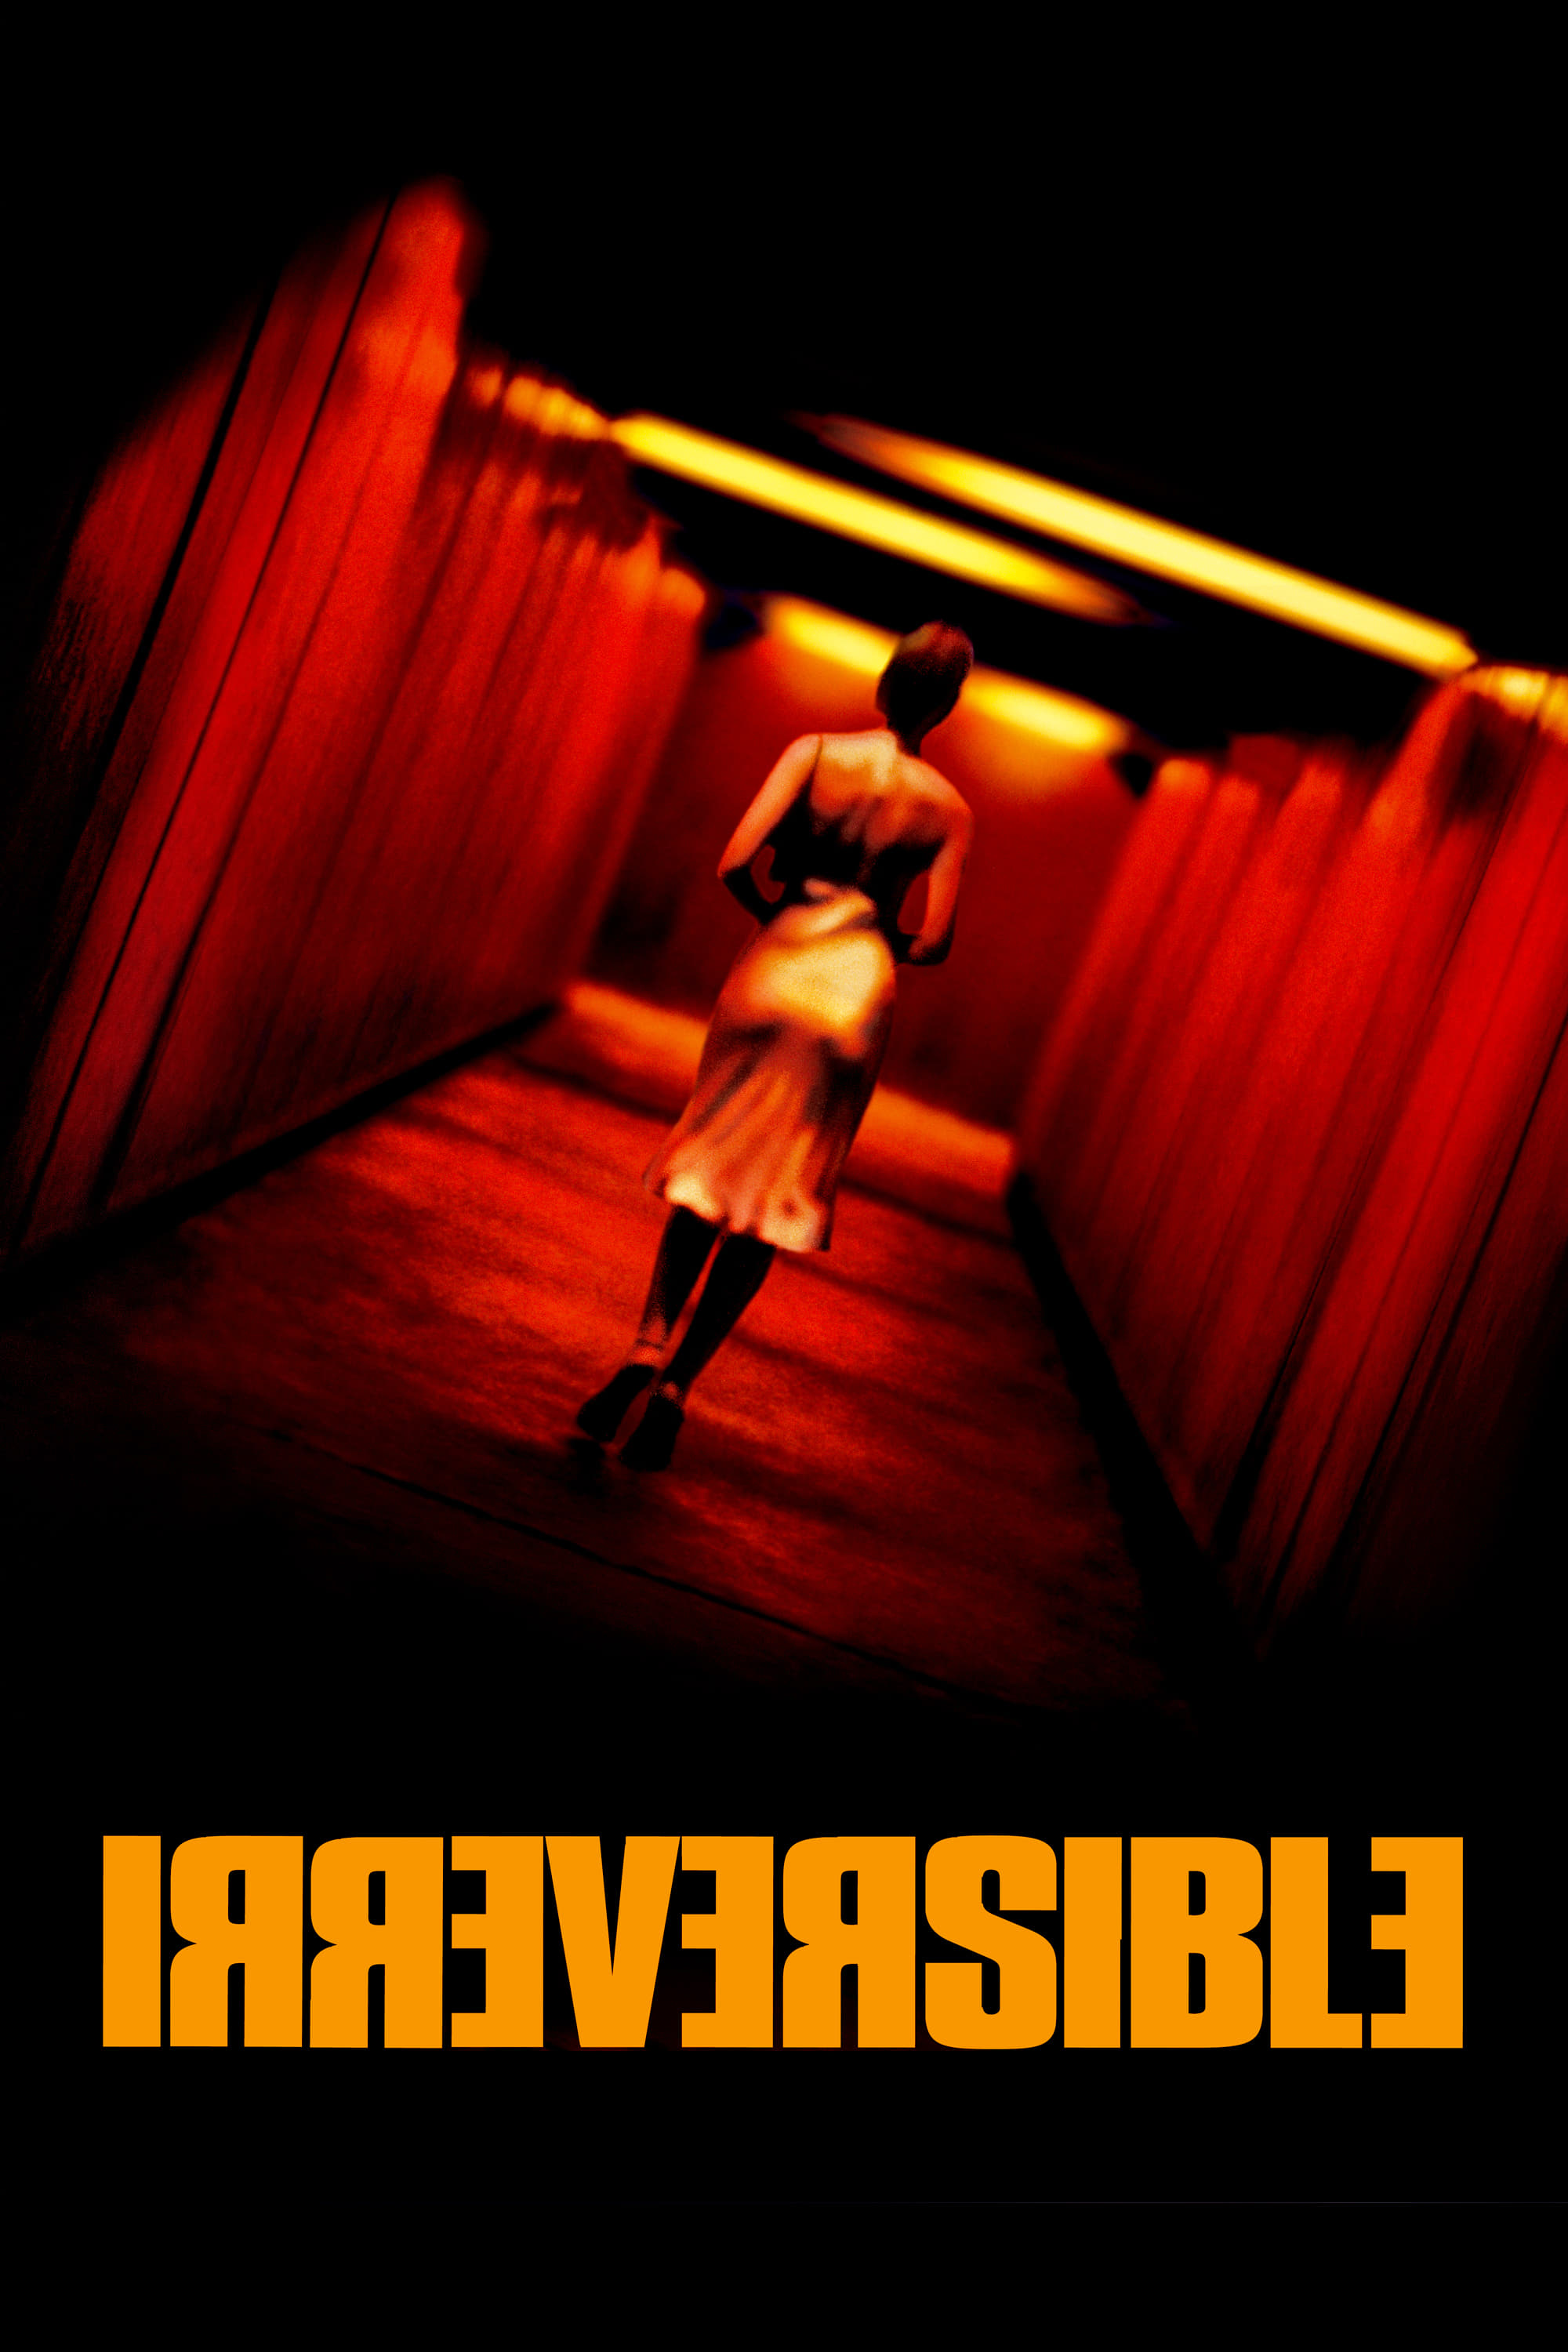 Chuyện Đã Rồi - Irreversible (2002)